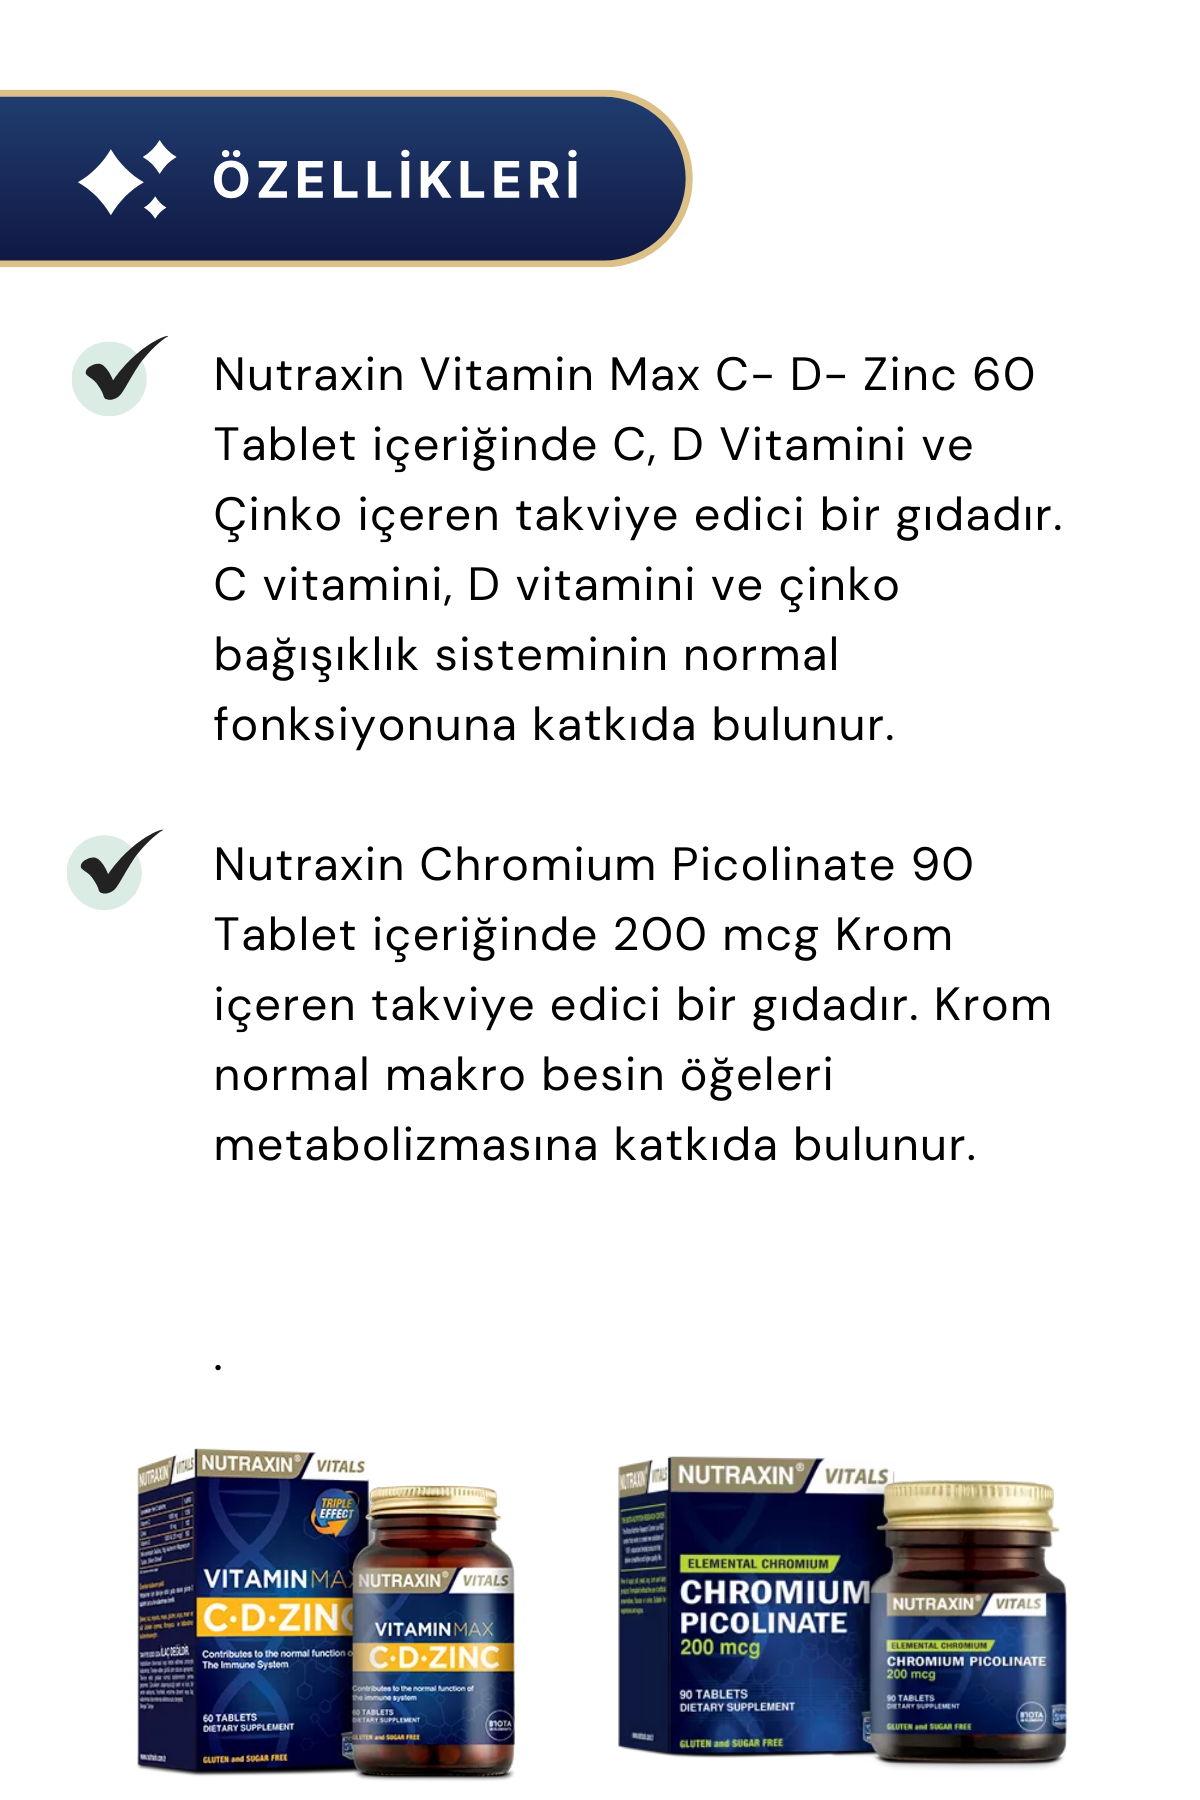 Nutraxin Chromium Picolinate & Vitamin Max C- D- Zinc